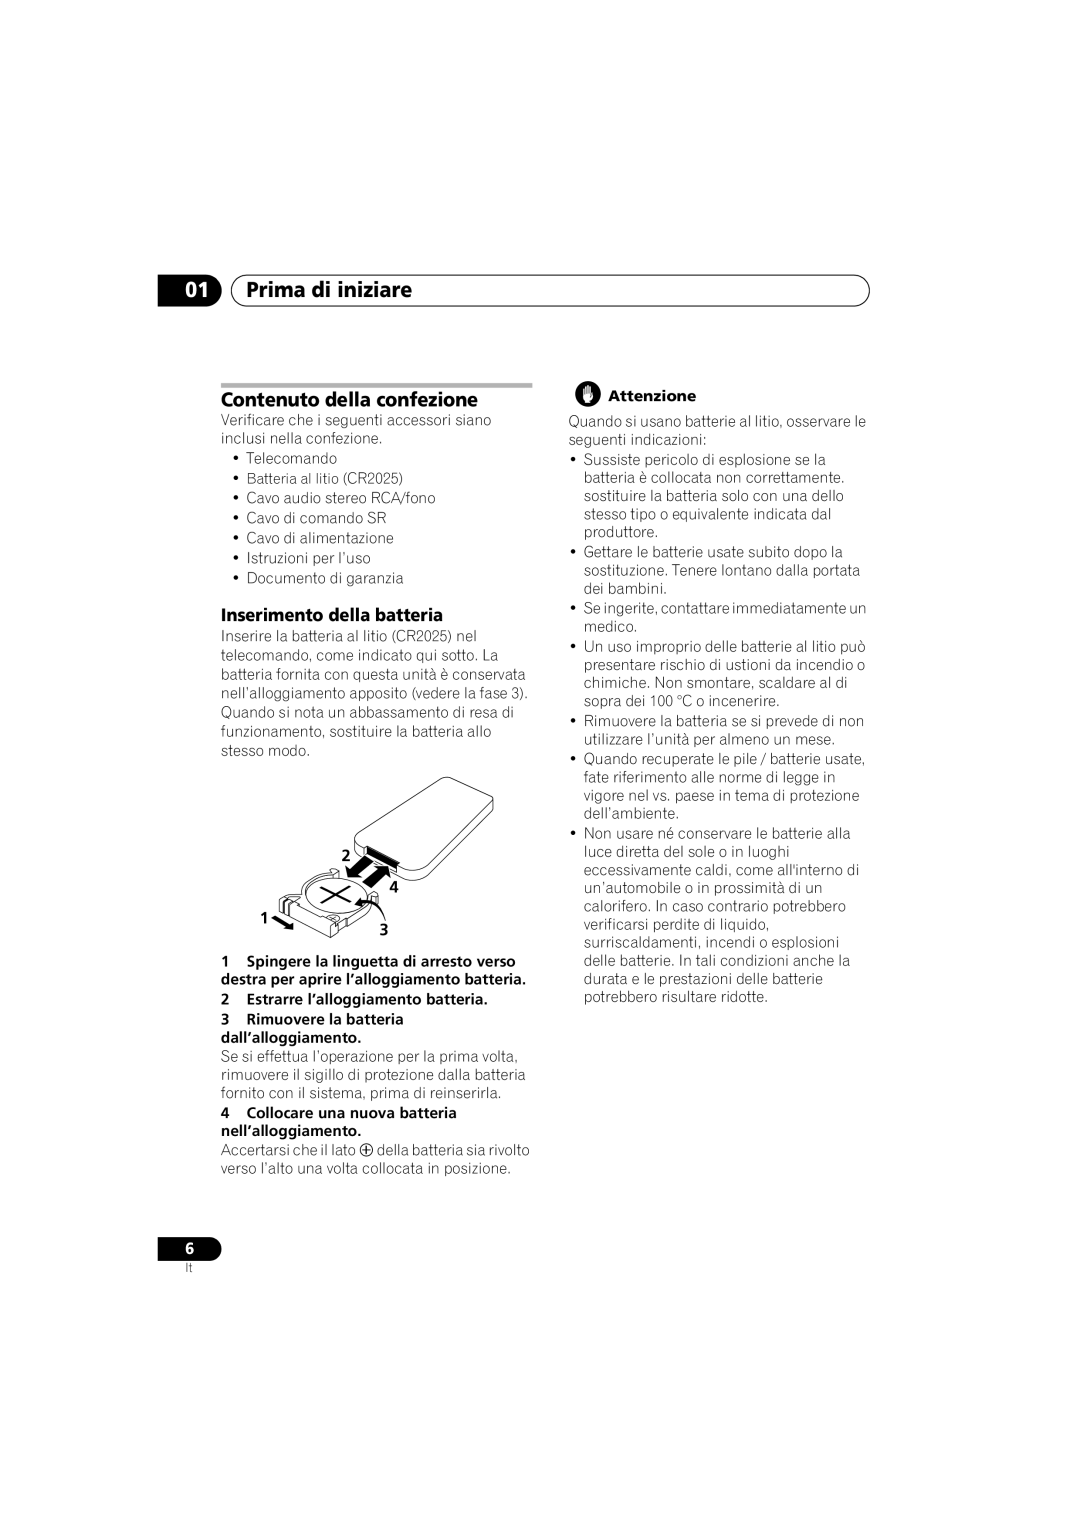 Pioneer PD-D6-J manual 01Prima di iniziare, Contenuto della confezione, Inserimento della batteria 